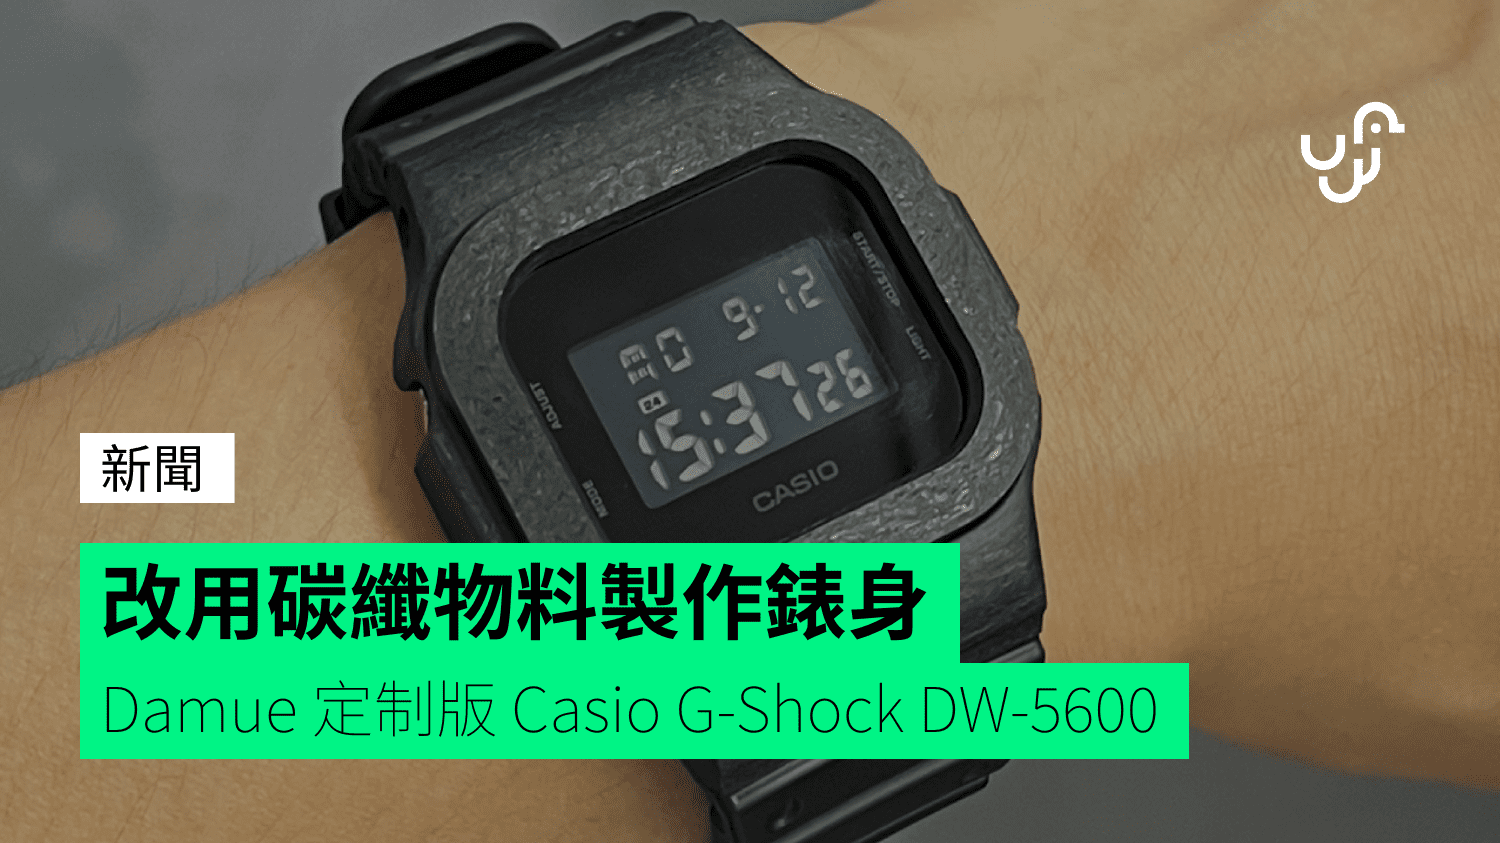 改用碳纖物料製作錶身Damue 定制版Casio G-Shock DW-5600 - 香港unwire.hk